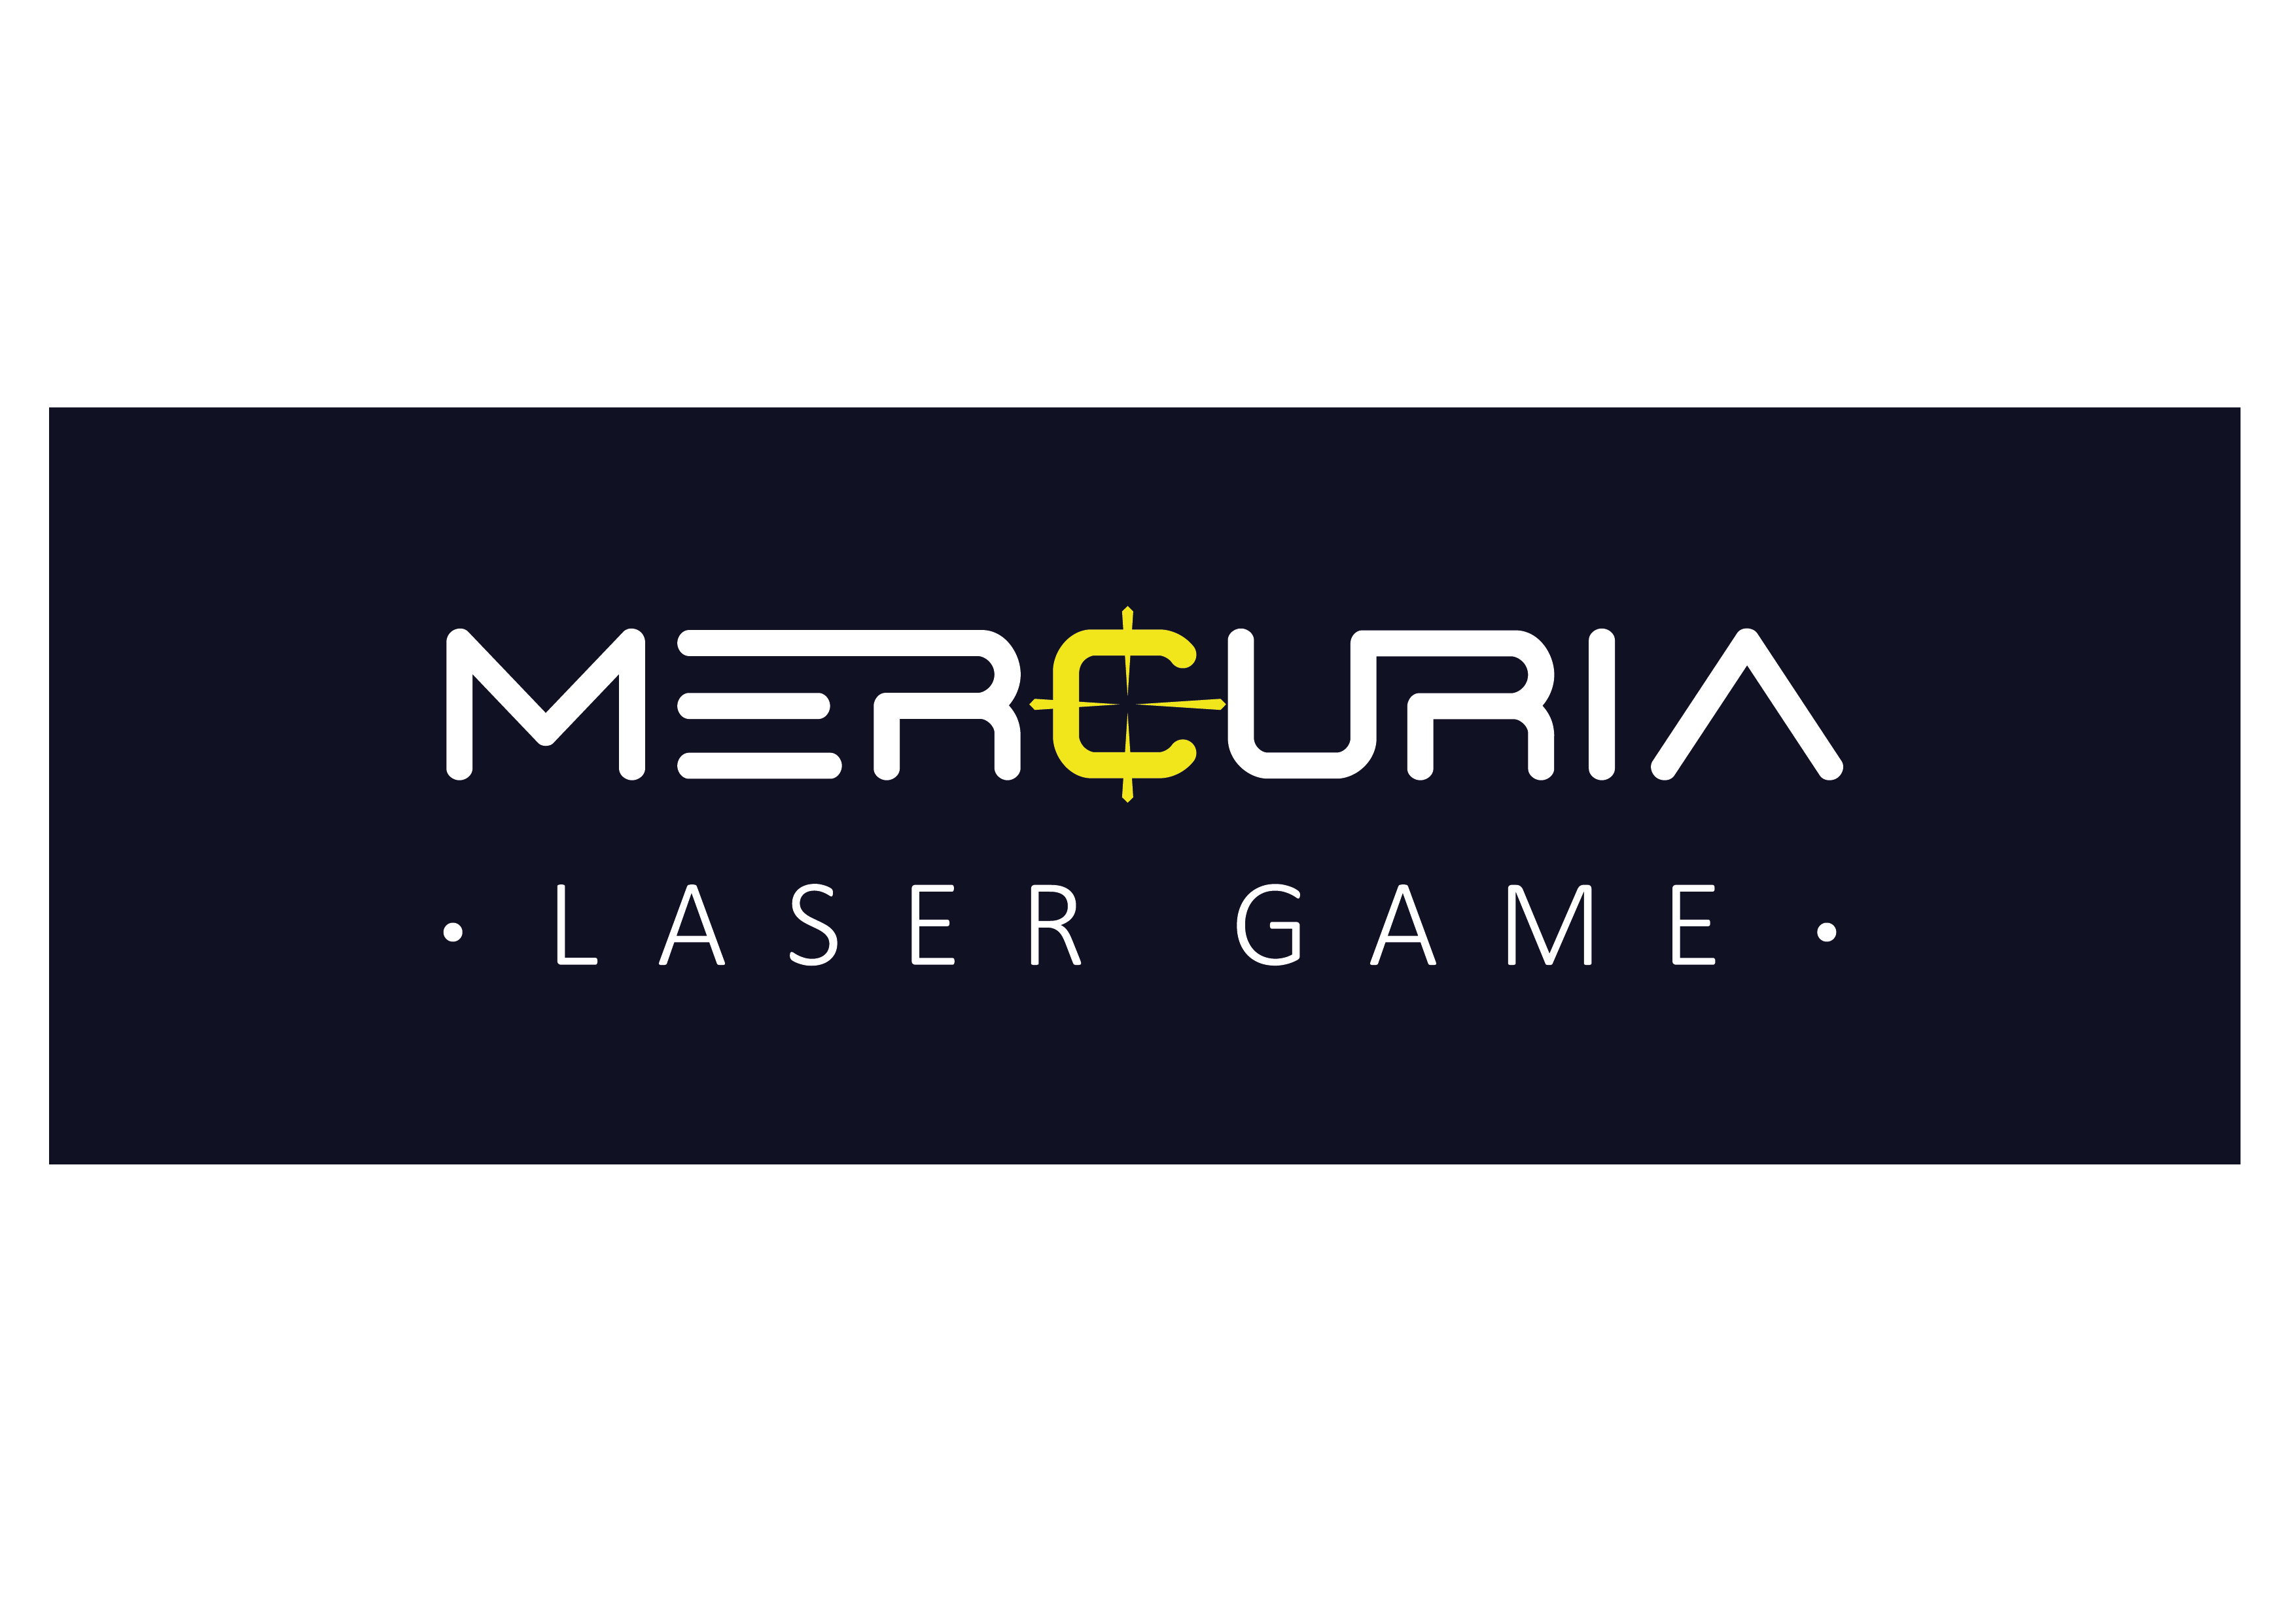 Mercuria lasergame logo